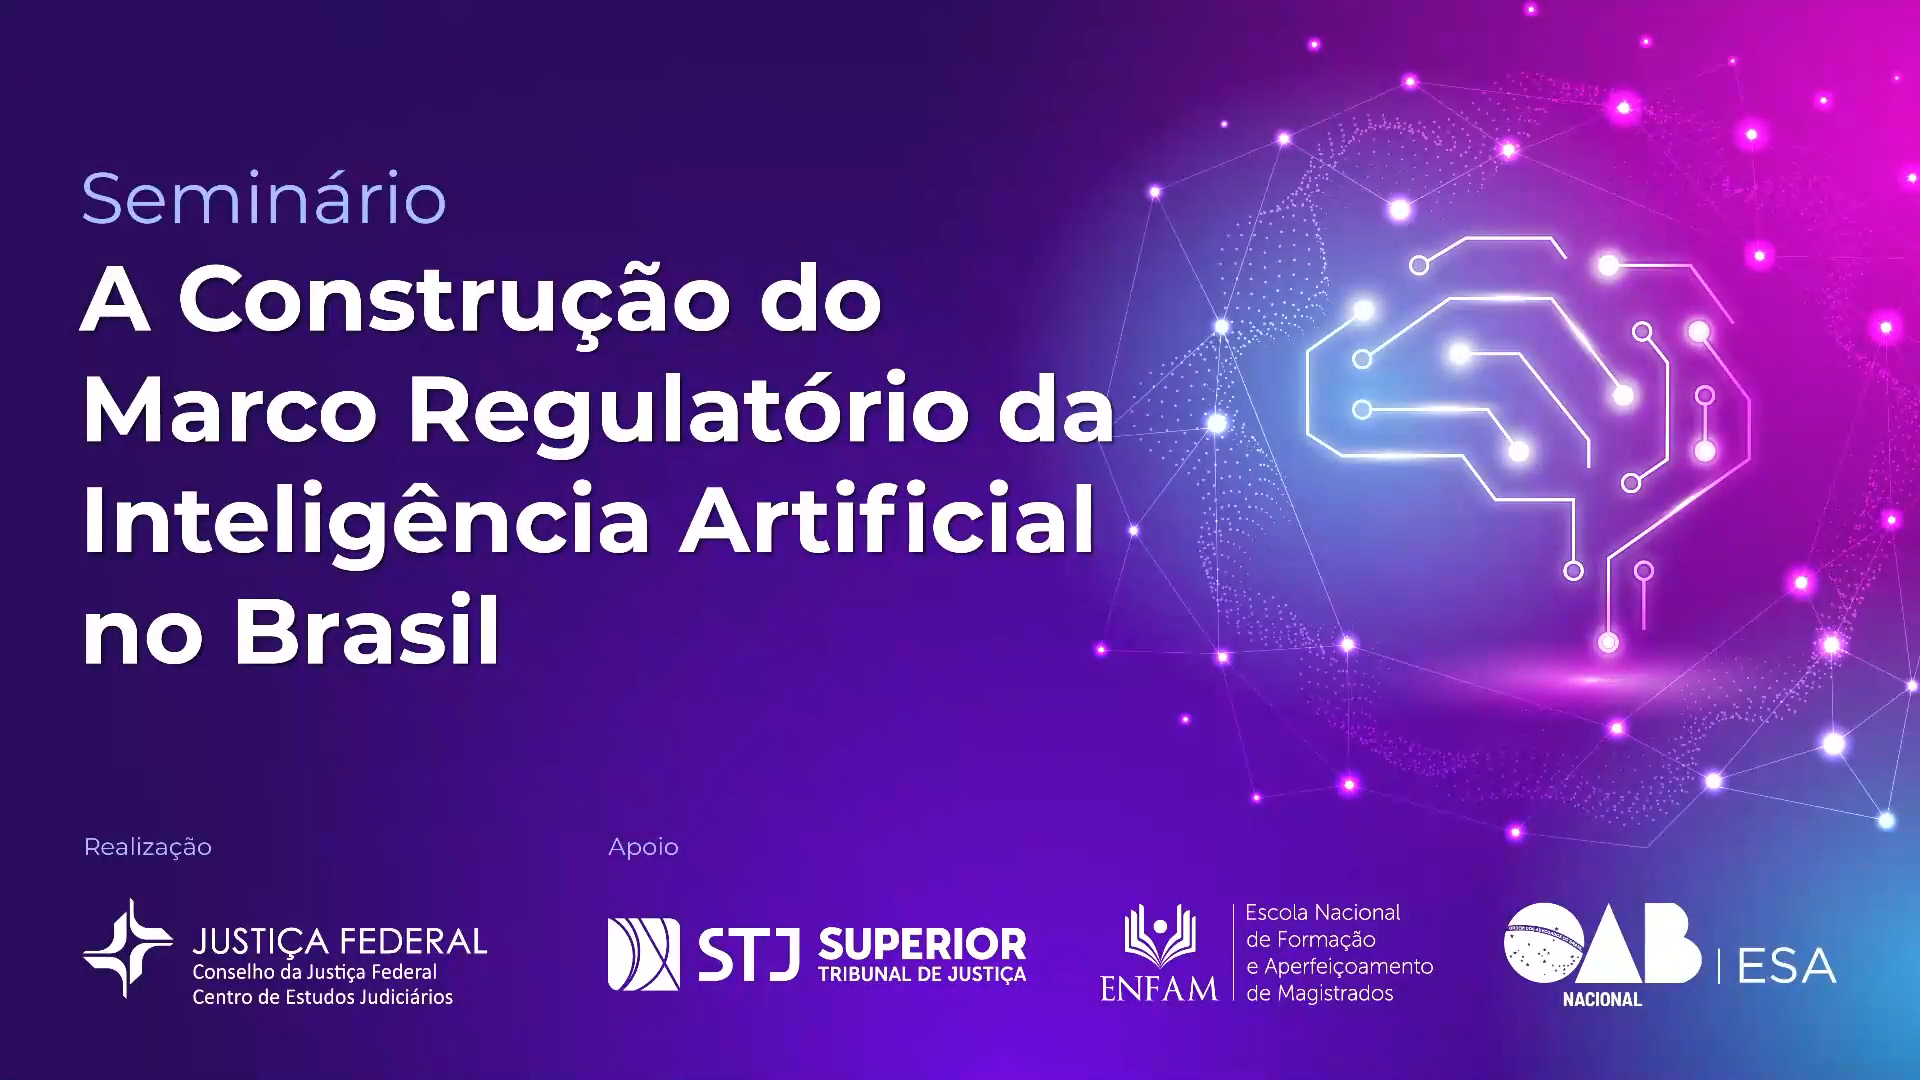  Seminário: A Construção do Marco Regulatório da Inteligência Artificial no Brasil